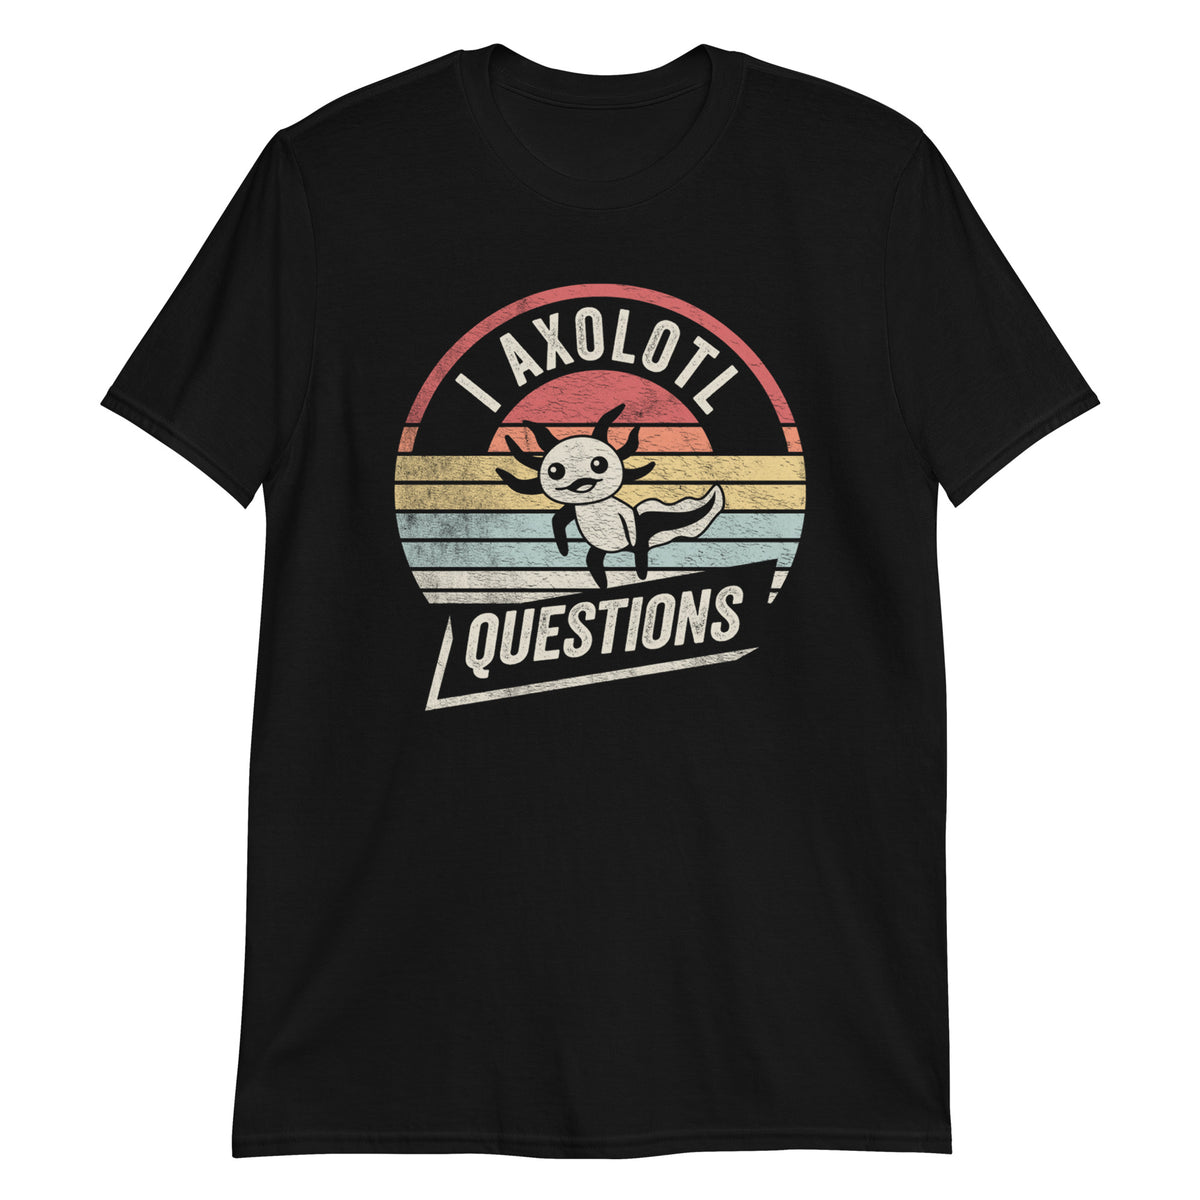 I Axolotl Questions  T-Shirt